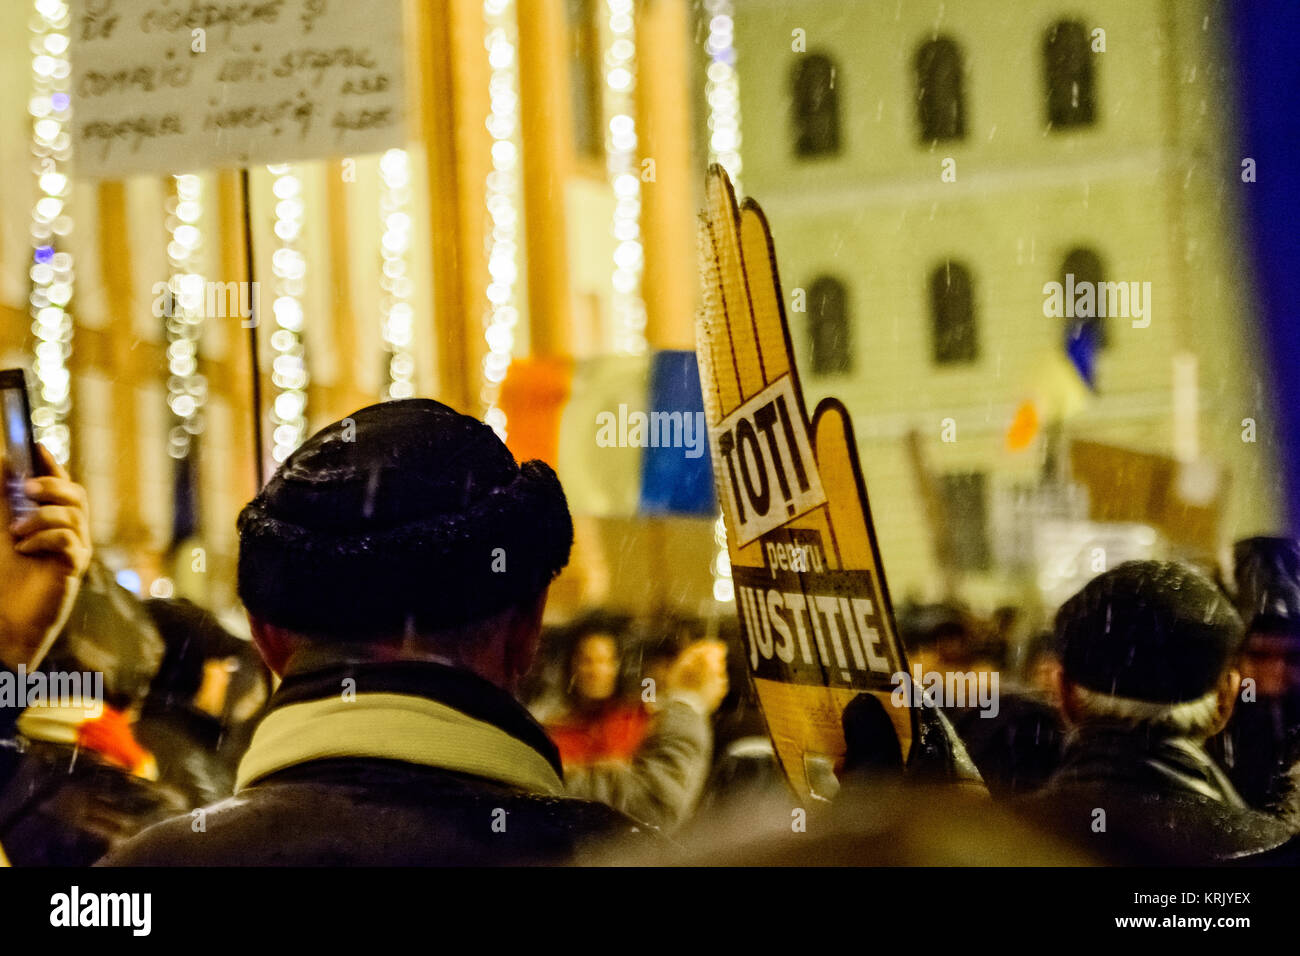 Brasov, Rumänien - Dezember 17, 2017: Tausende Rumänen gegen Koalition und seine Pläne, die Regeln der Gerechtigkeit zu ändern protestieren. Stockfoto